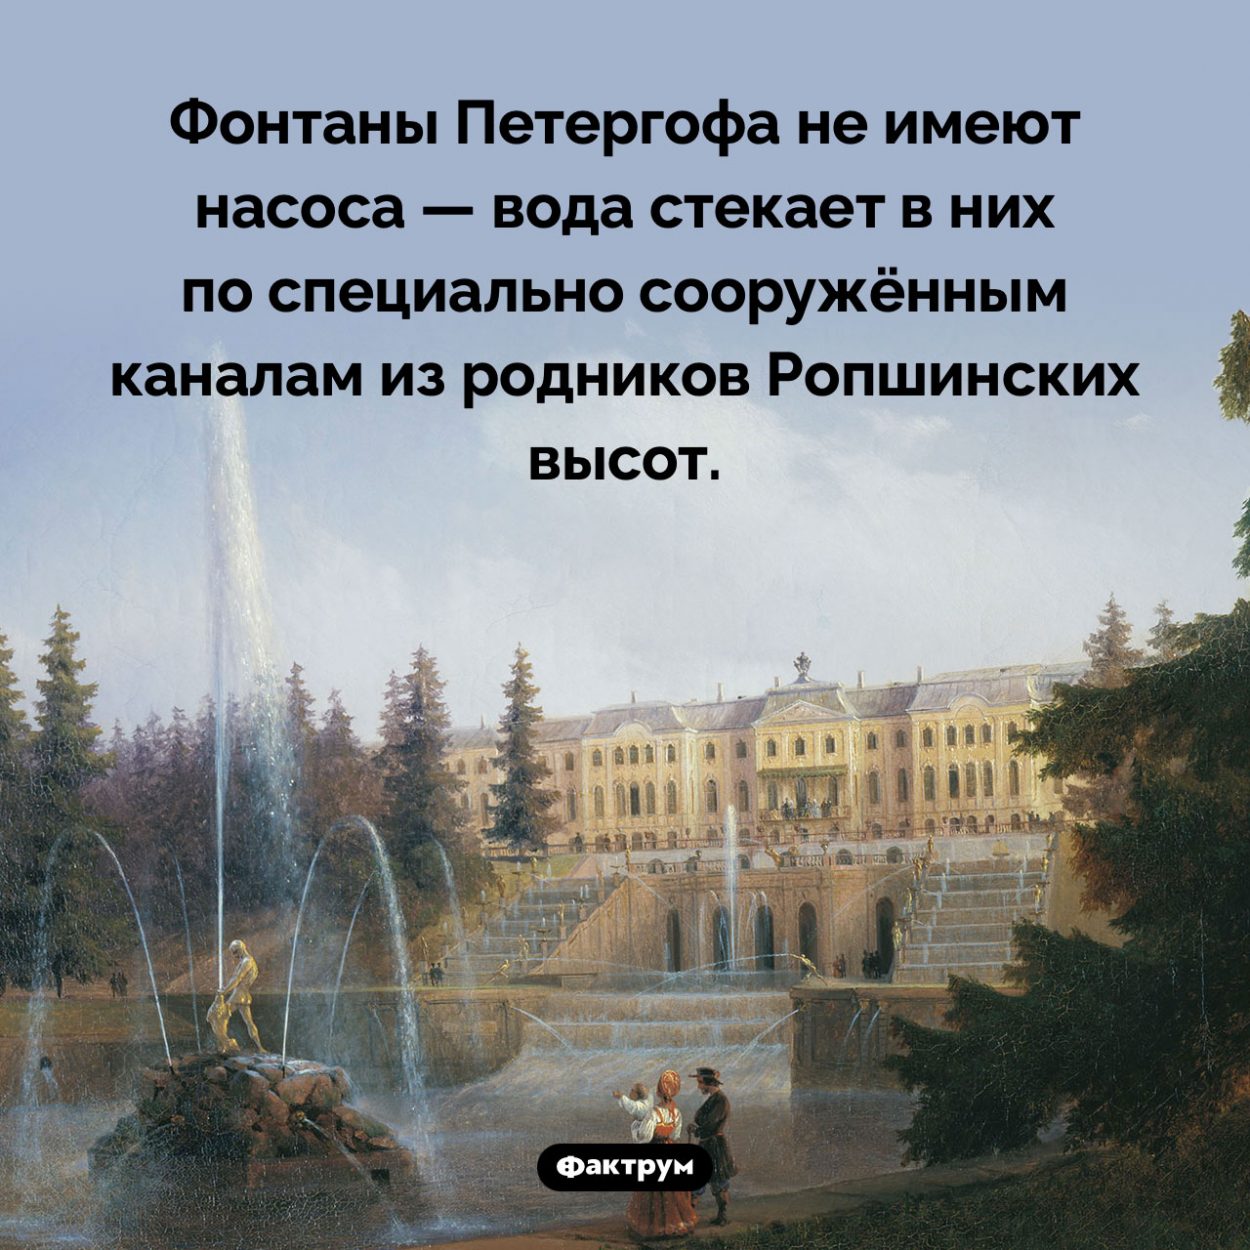 В чем уникальность петергофских фонтанов. Фонтаны Петергофа не имеют насоса — вода стекает в них по специально сооружённым каналам из родников Ропшинских высот.